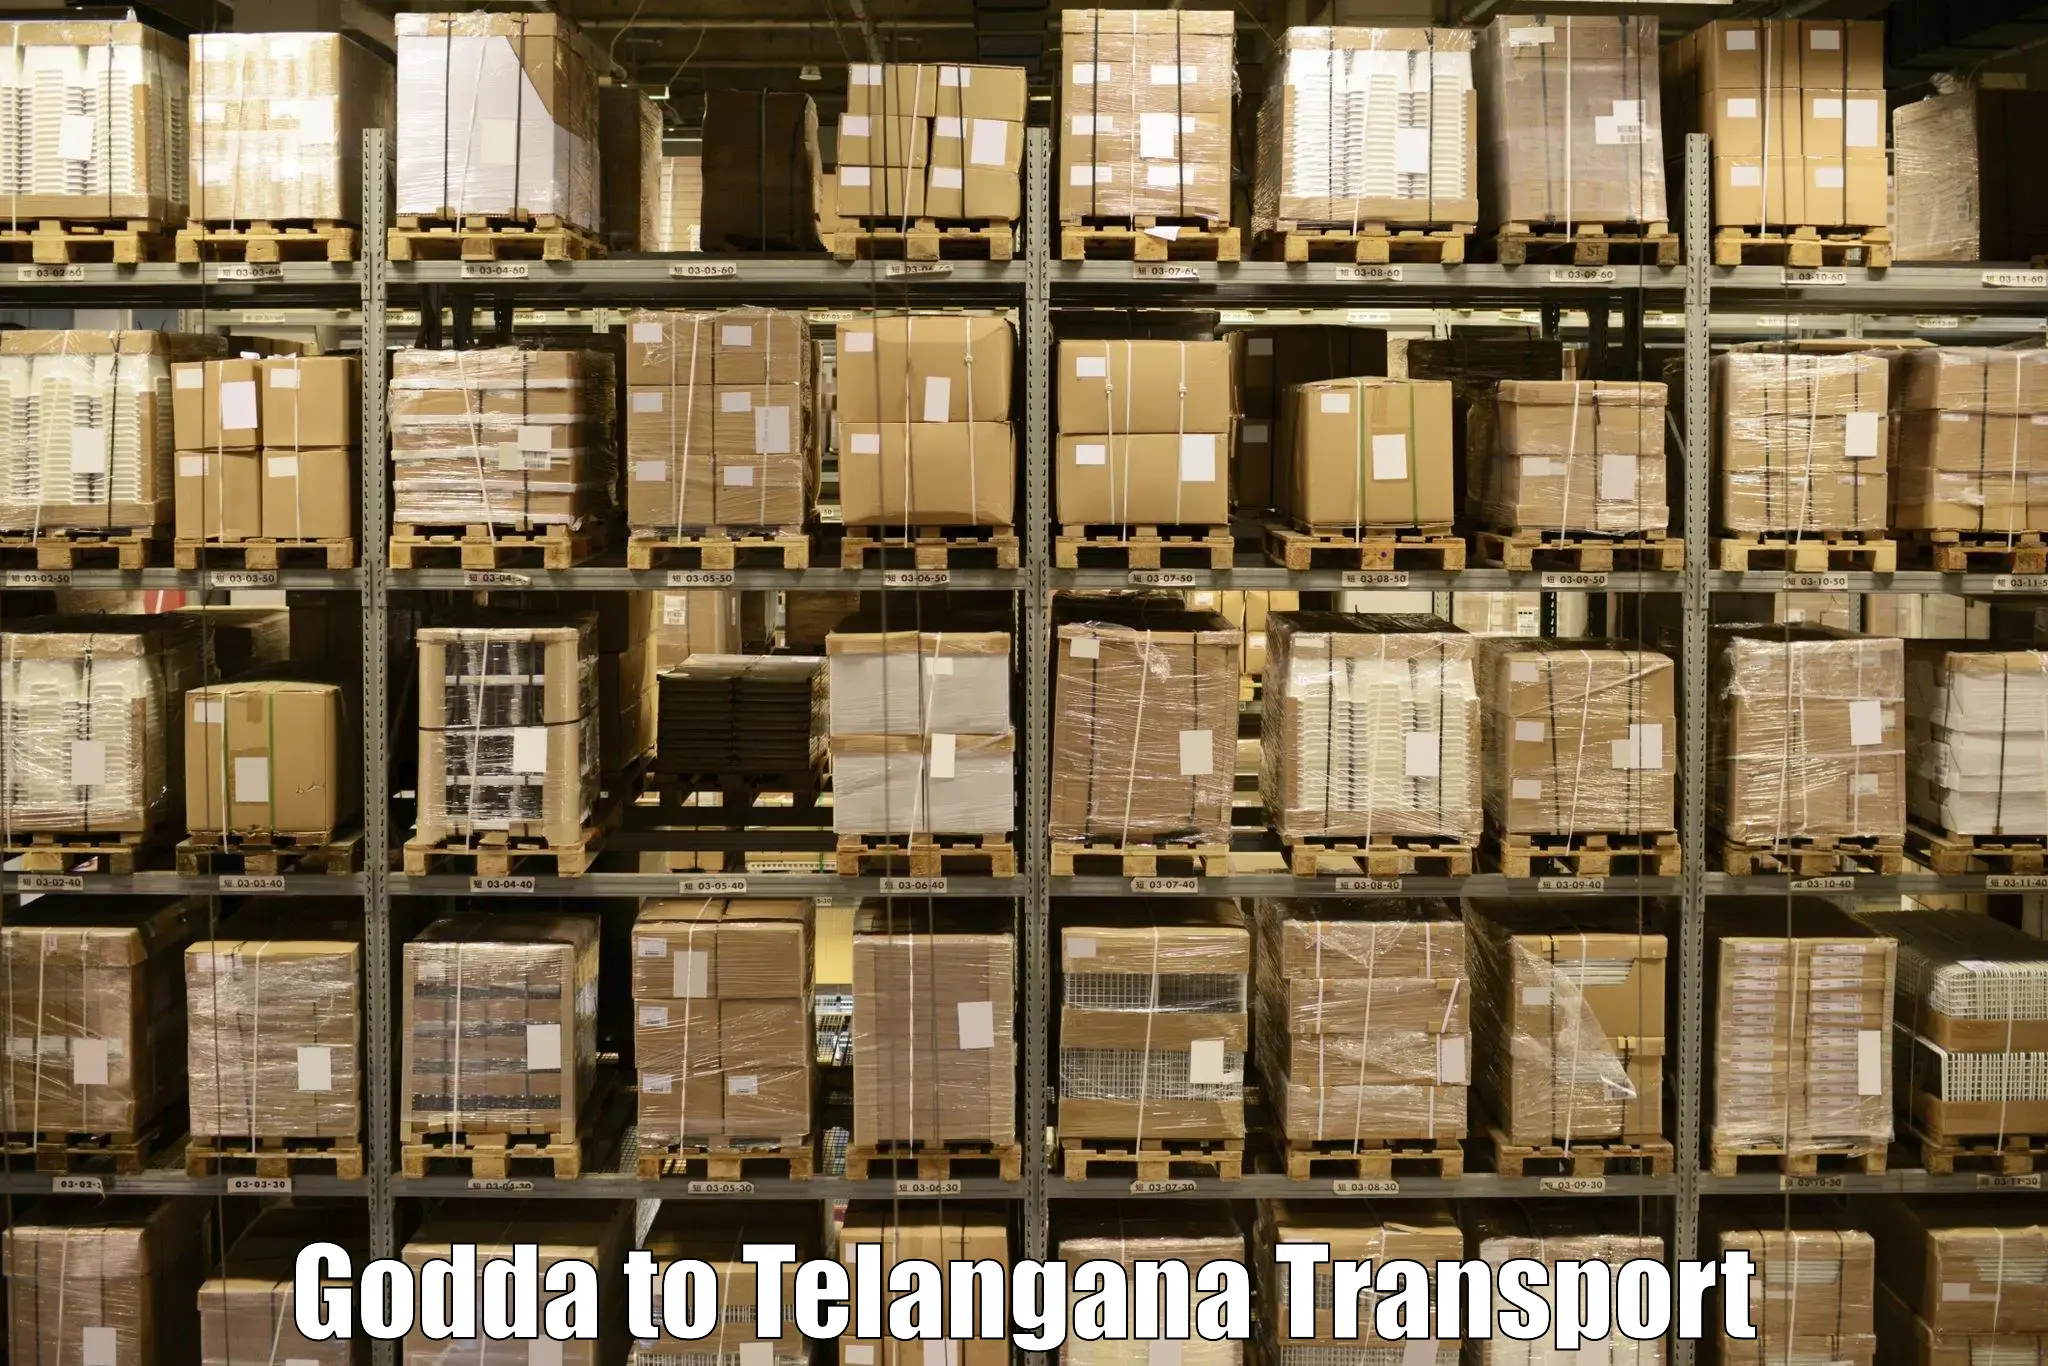 Online transport service Godda to Kacheguda